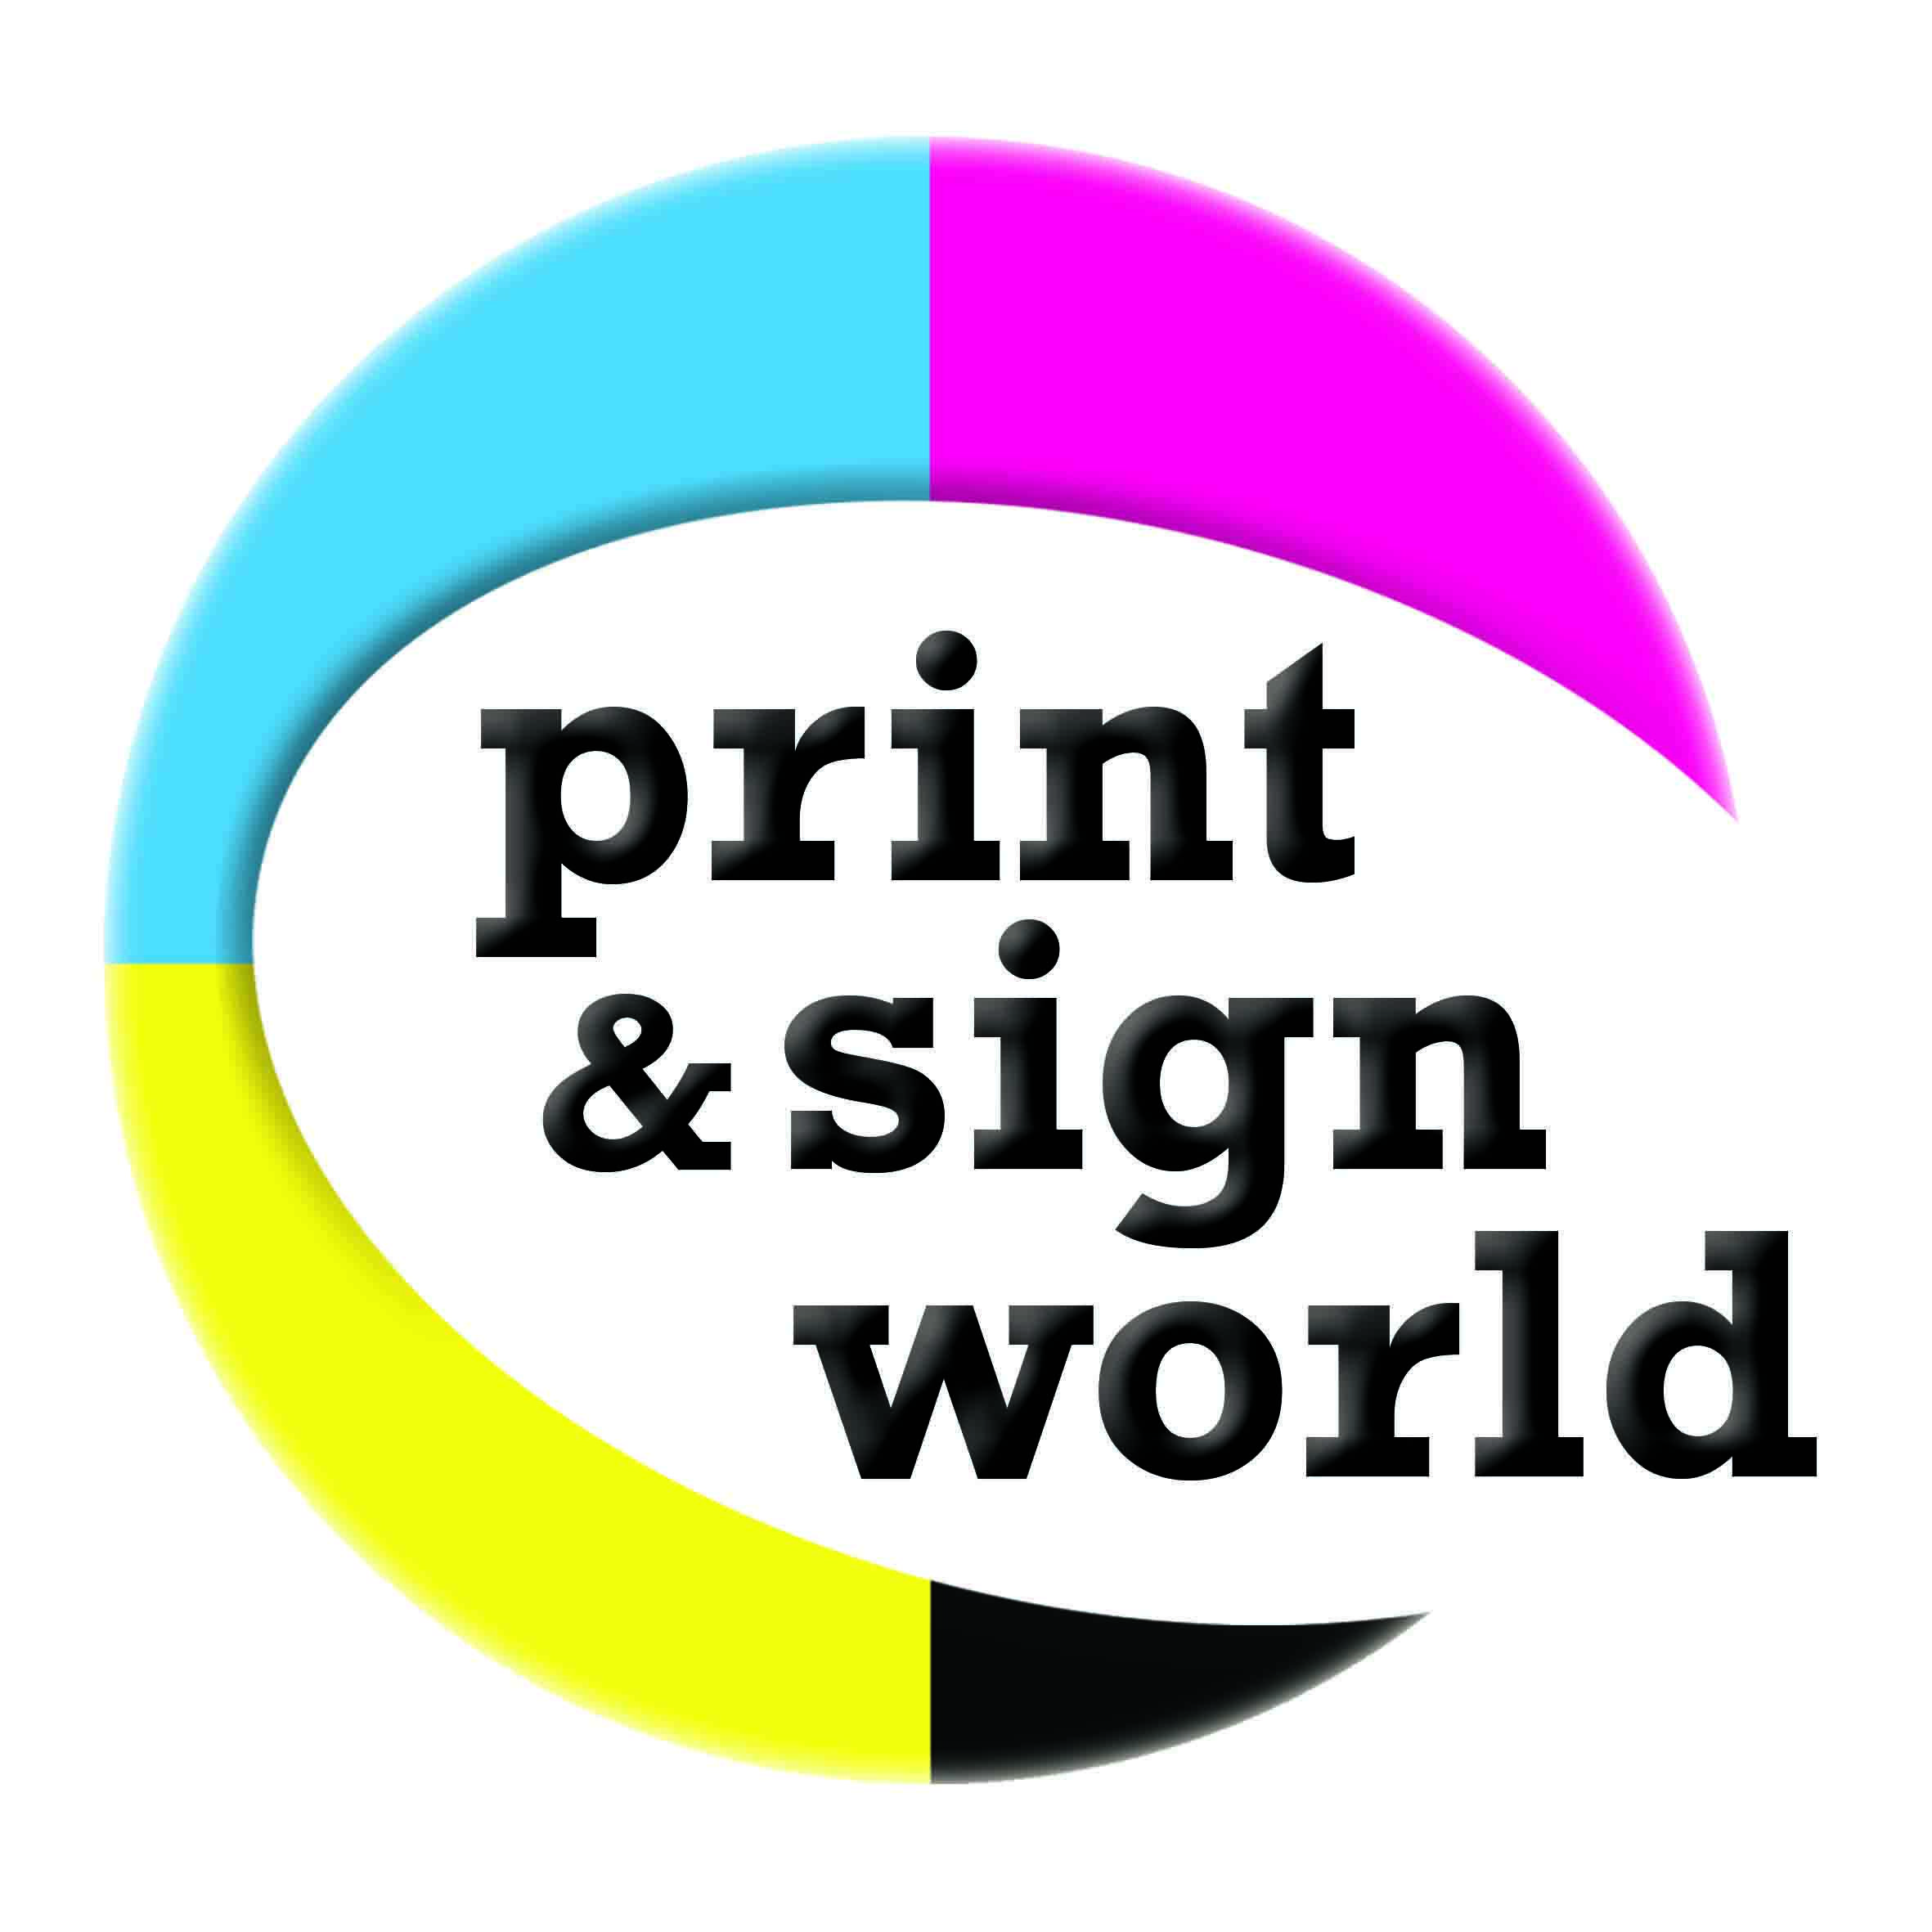 NARA's Wrold Logo - Print and Sign World logo | Print and Sign World | Signs, World, Logos